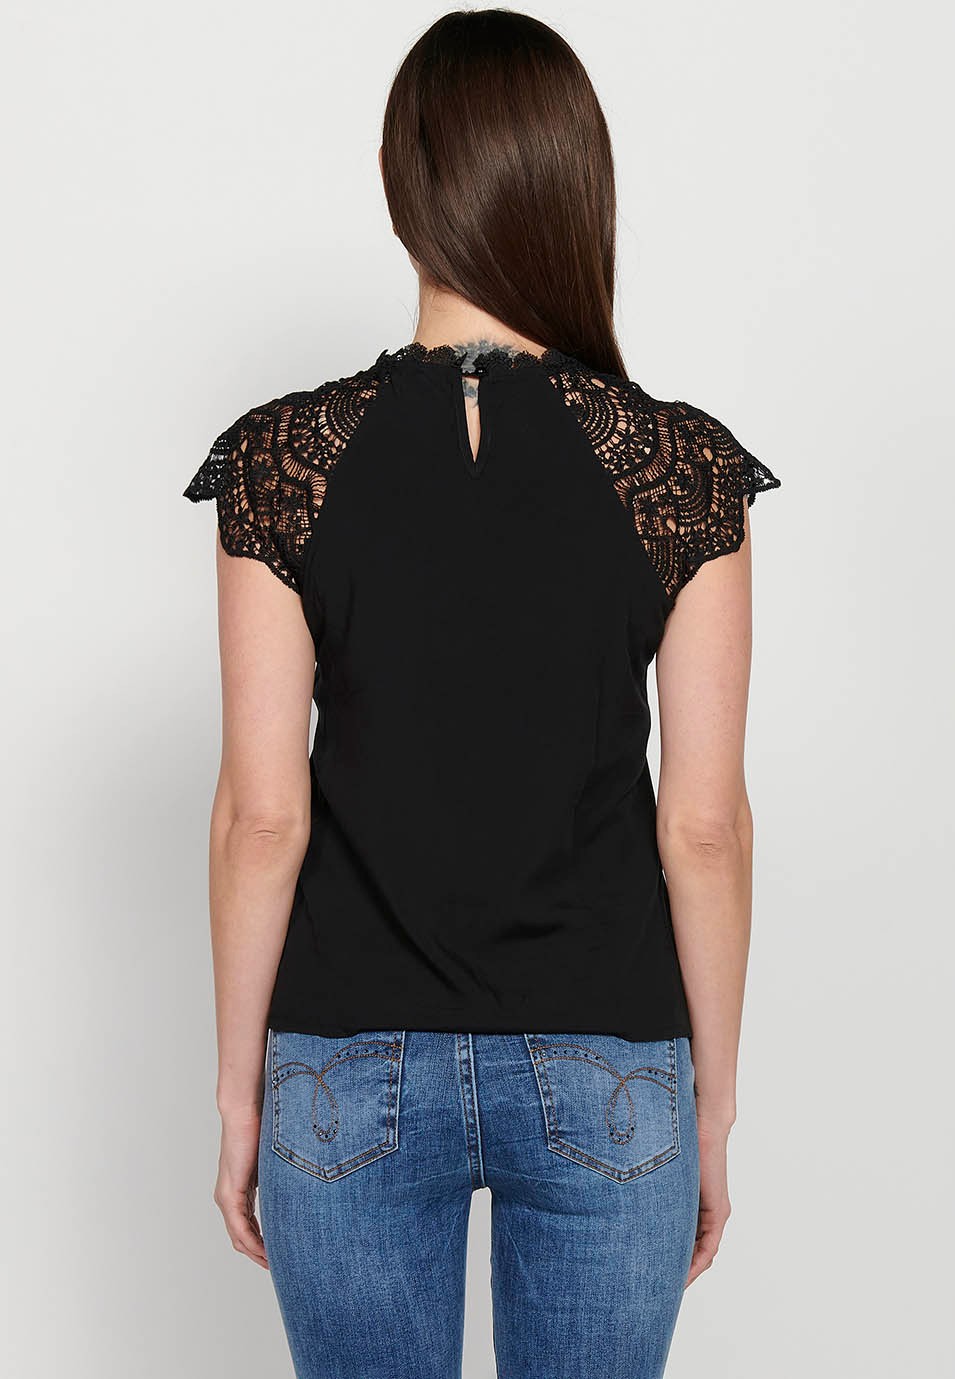 Ärmelloses T-Shirt, runder Ausschnitt mit Spitze, schwarze Farbe für Damen